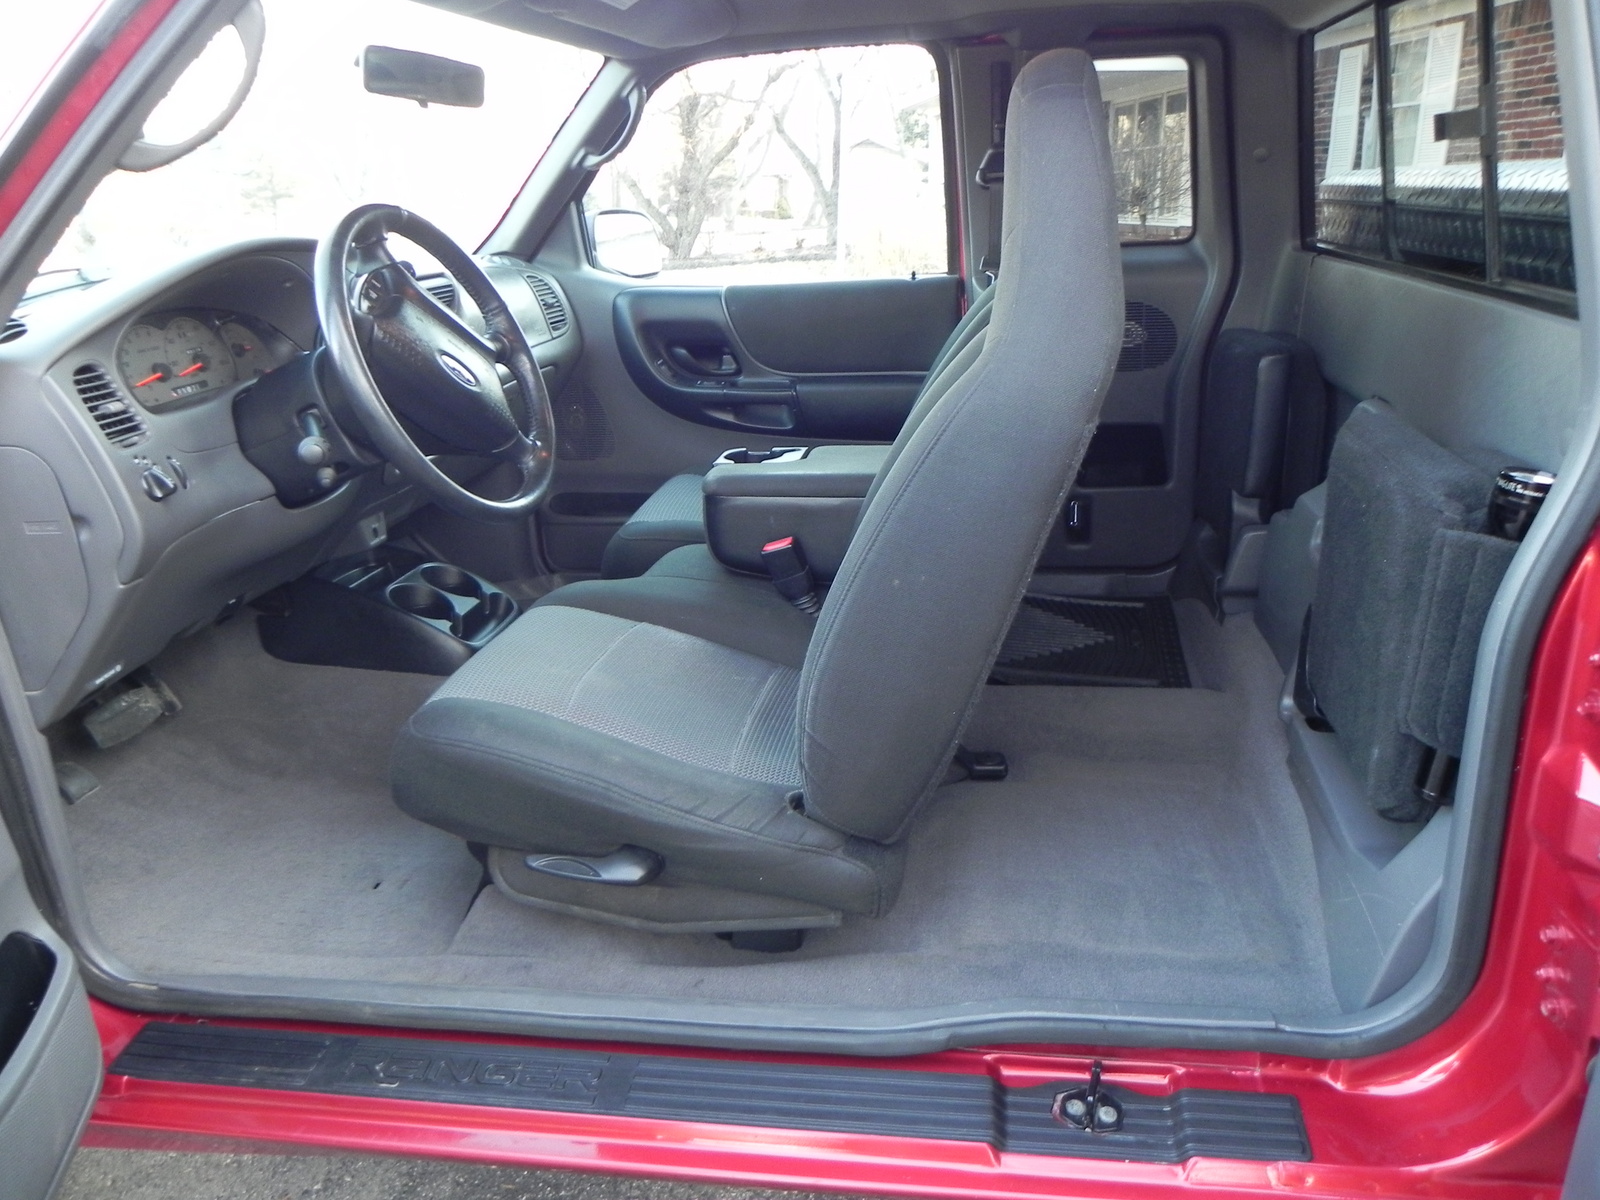 Ford ranger edge 2003 interior #2